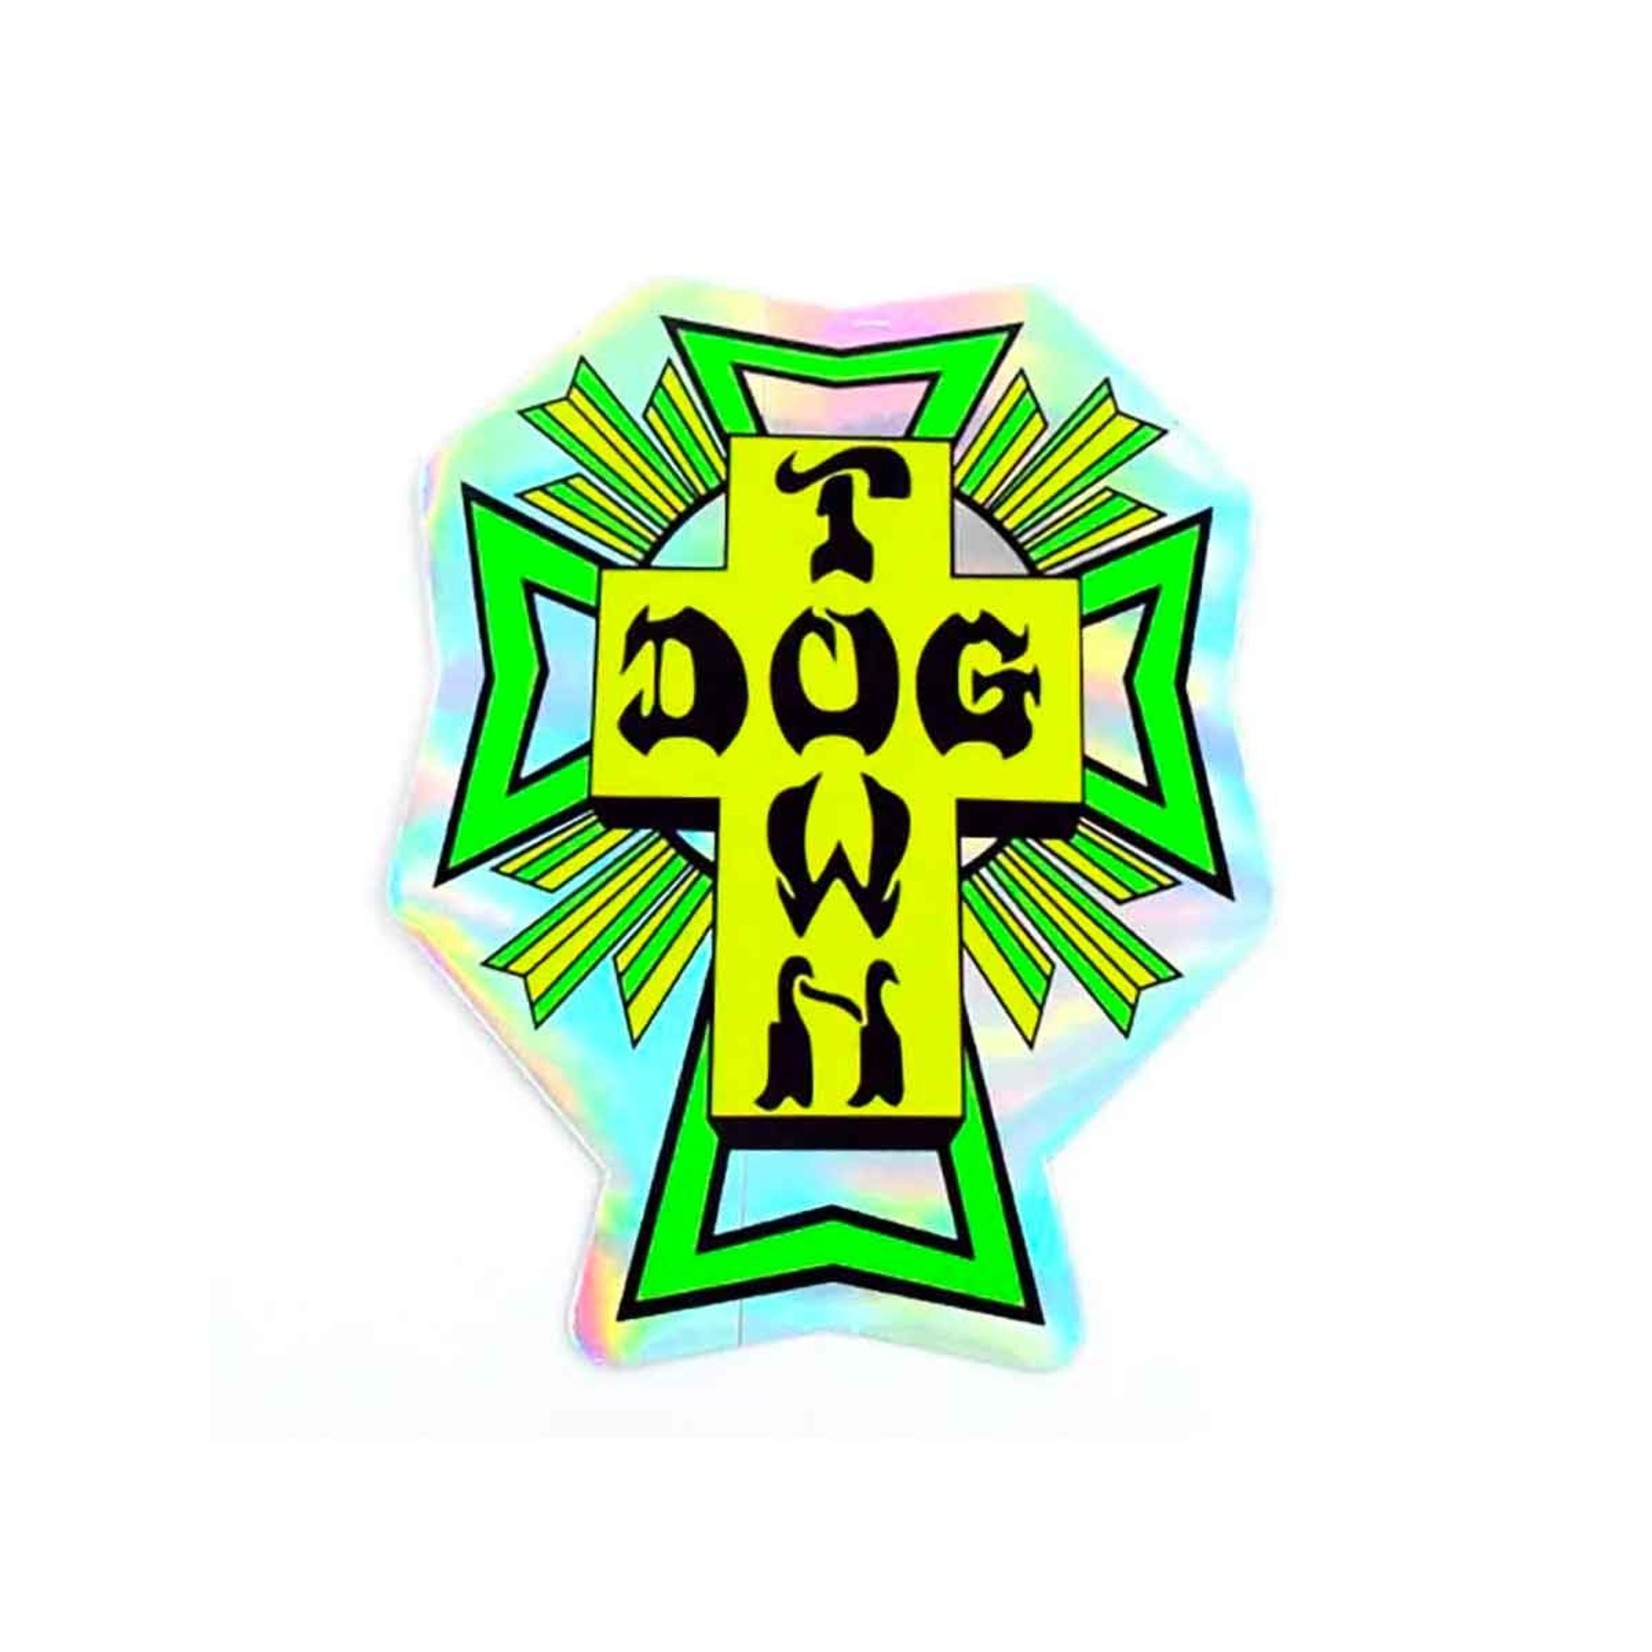 Dogtown Dogtown Foil Cross Logo Flag 4" Die Cut Sticker - Asst'd Colors